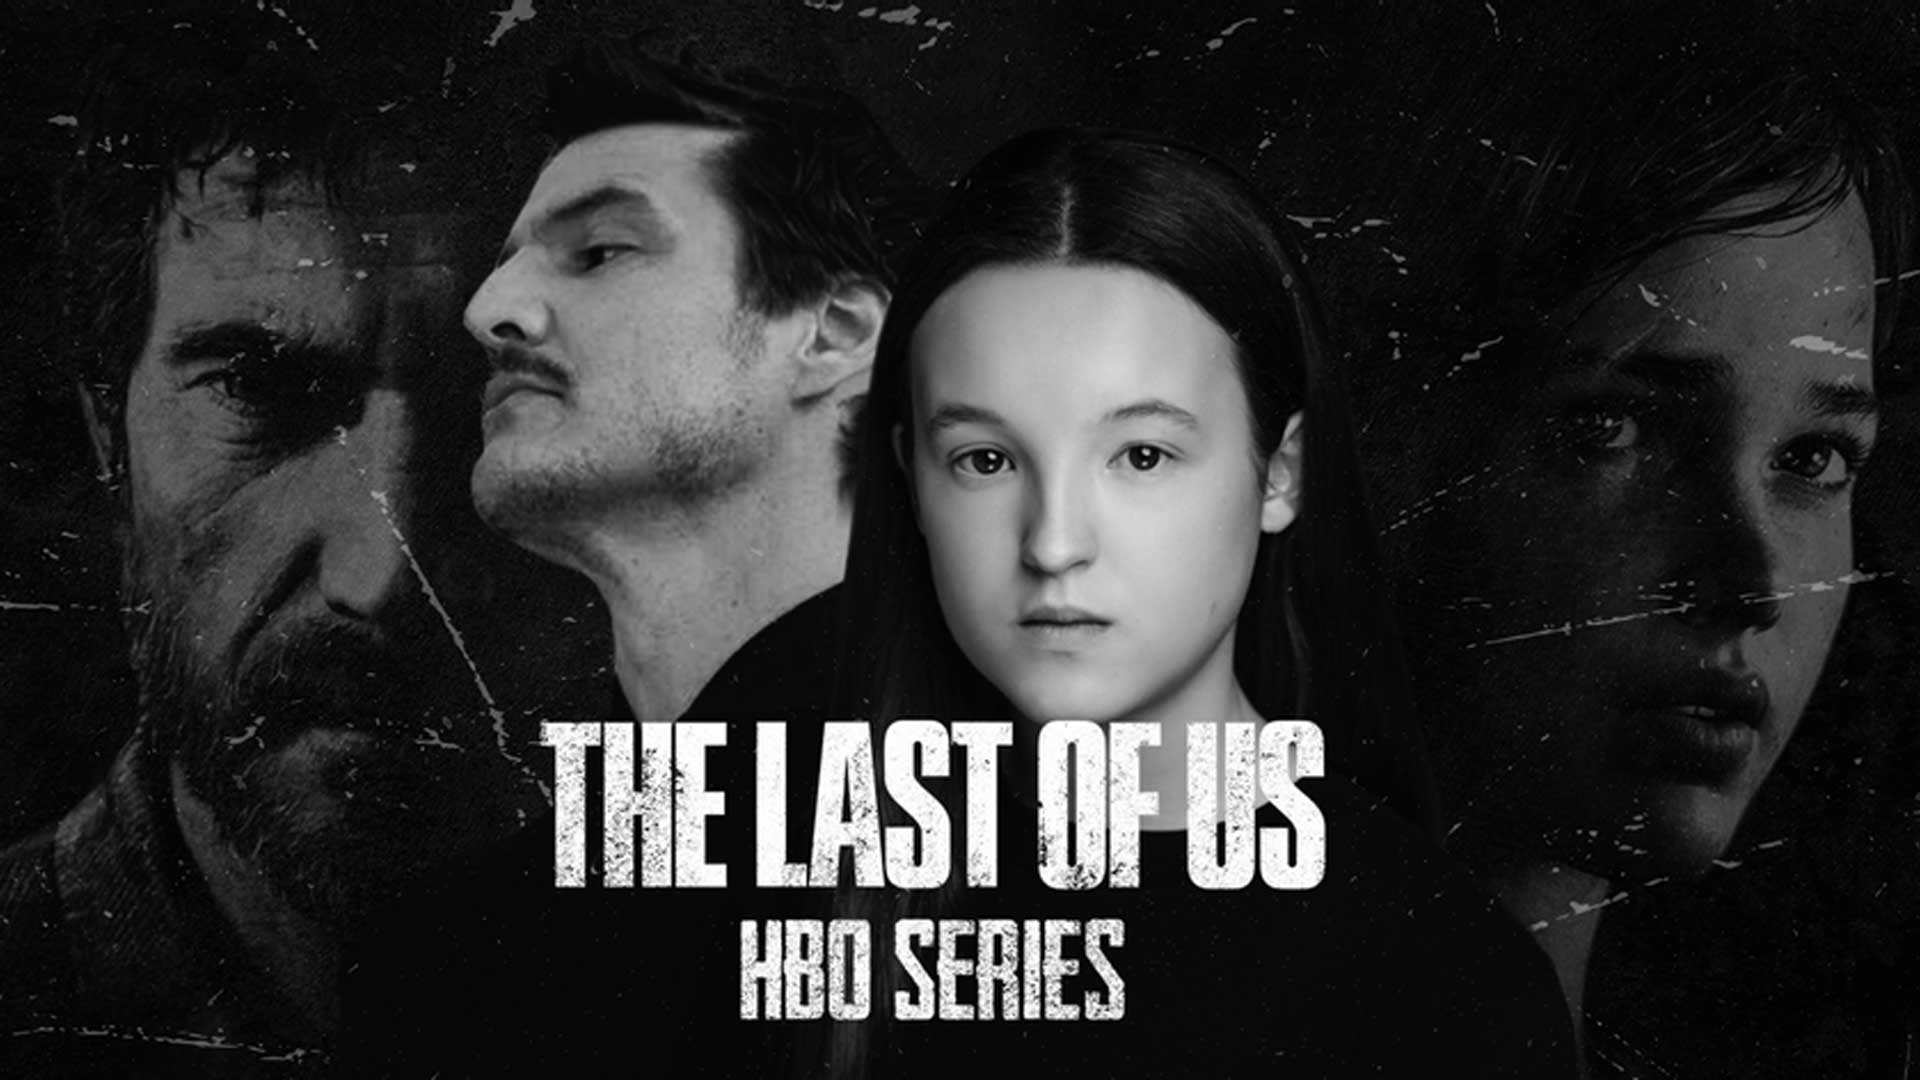 شایعه: سریال The Last of Us هشت فصل خواهد بود